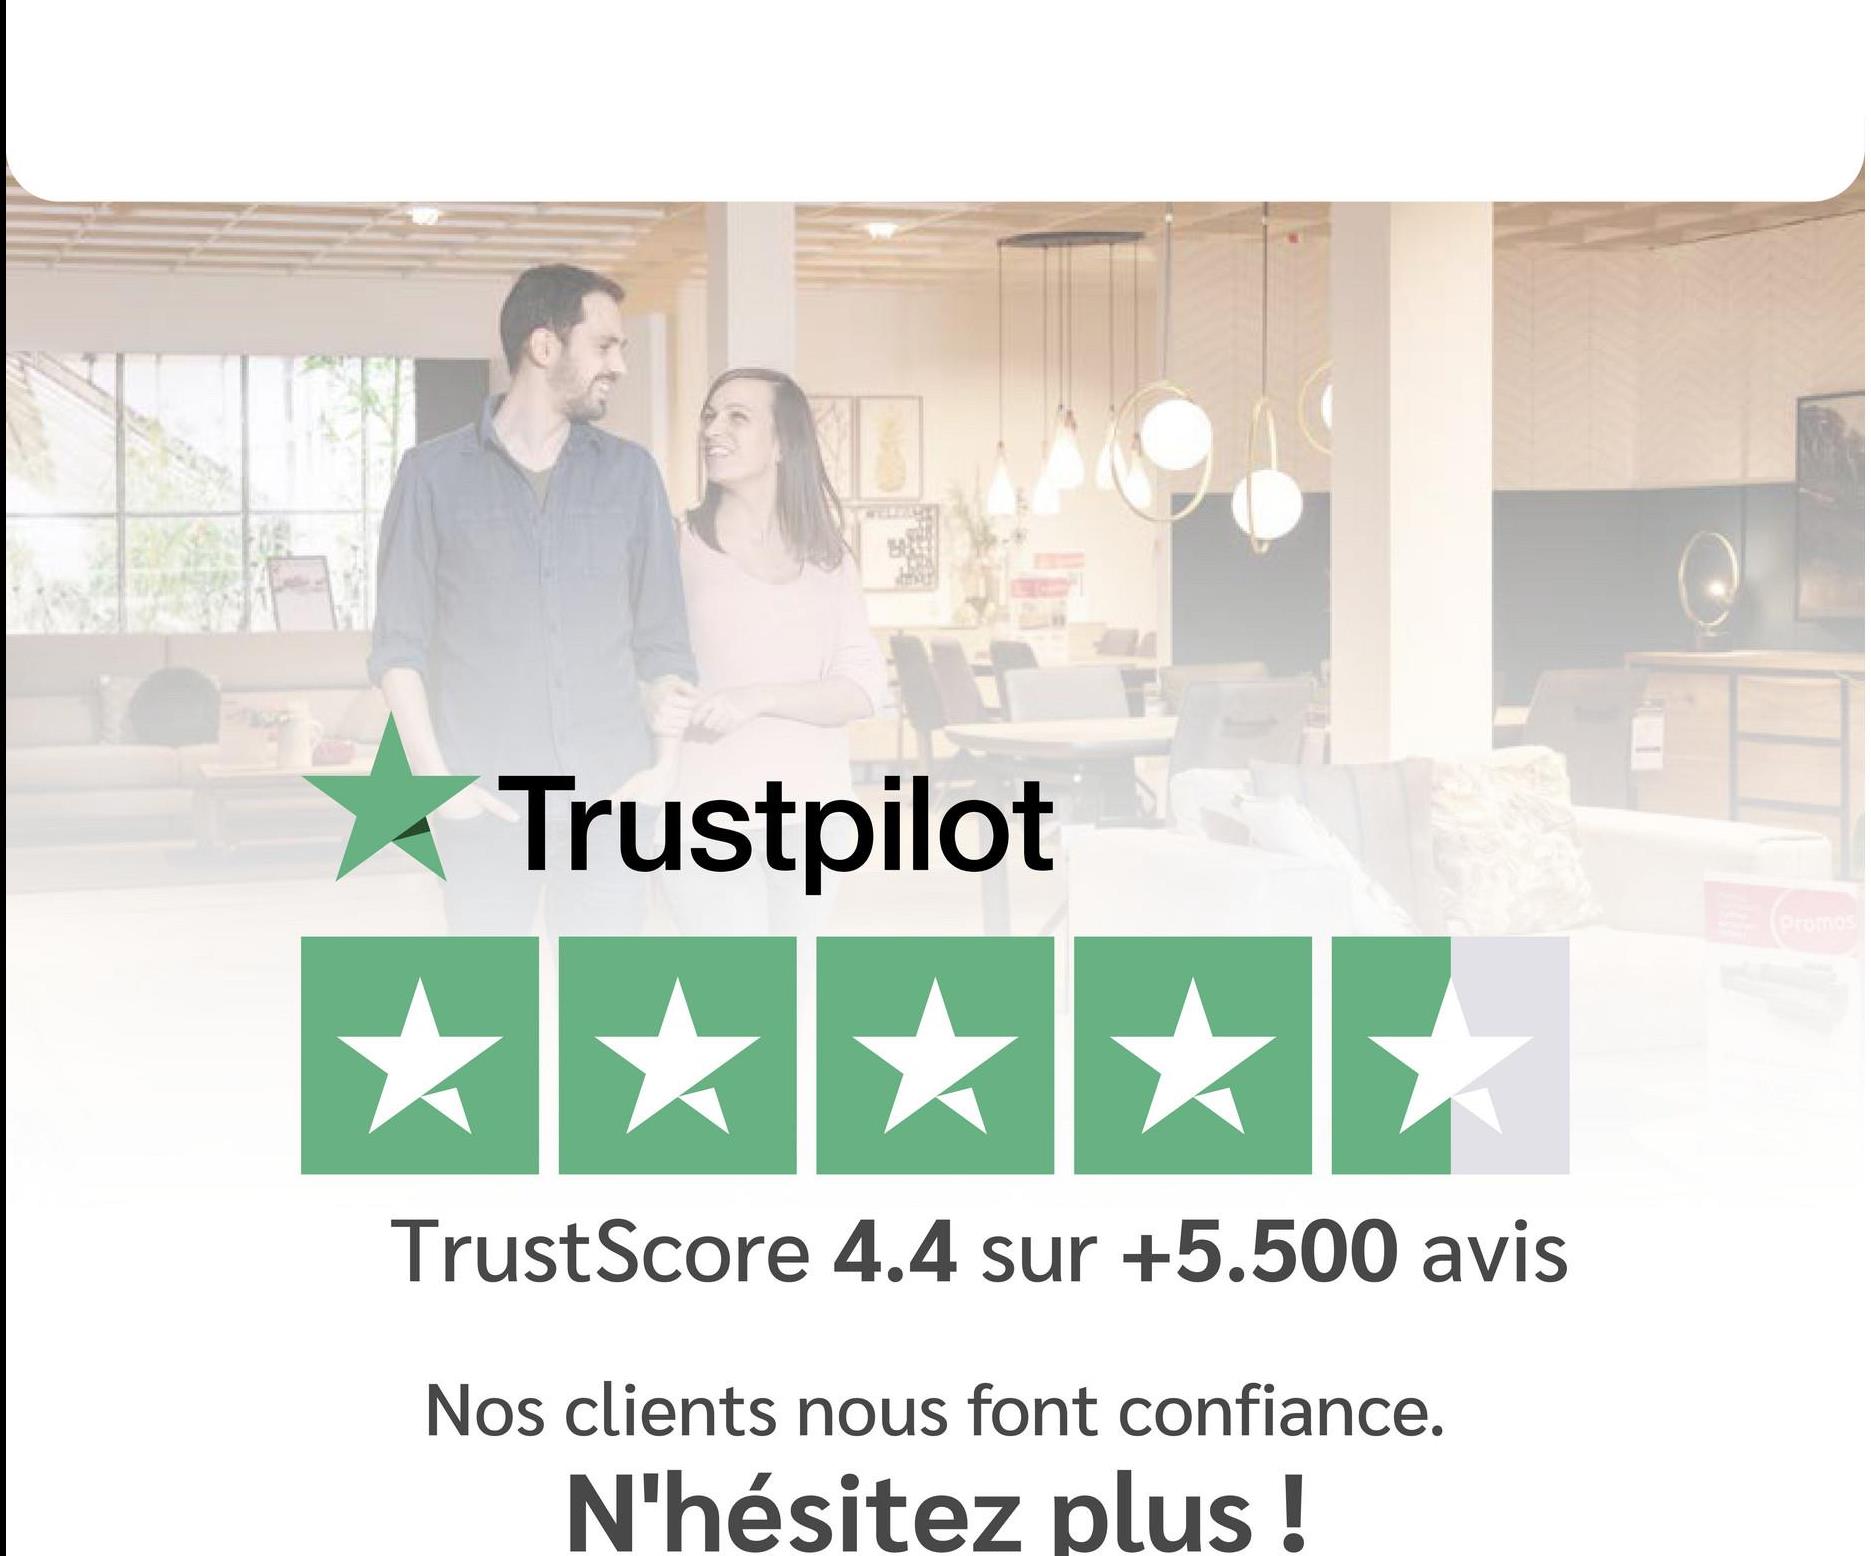 Trustpilot
TrustScore 4.4 sur +5.500 avis
Nos clients nous font confiance.
N'hésitez plus !
Promos